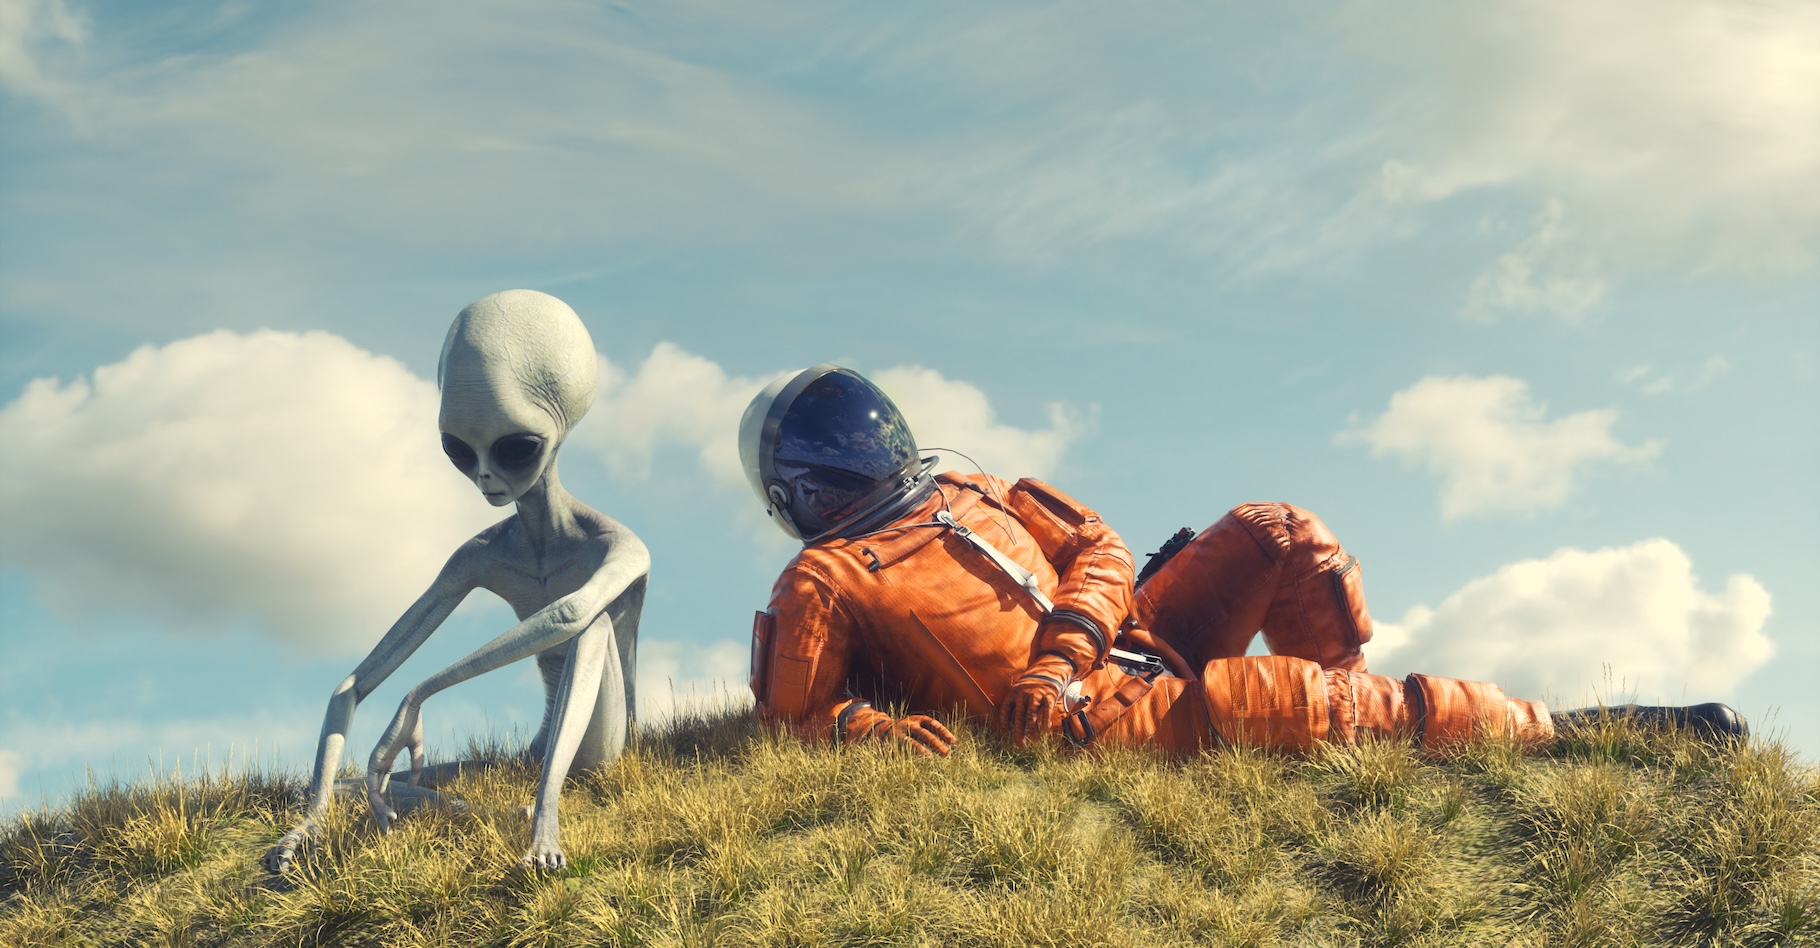 L'intelligence artificielle pourrait aider l’humanité à entrer en contact avec des extraterrestres. © allvision, Adobe Stock